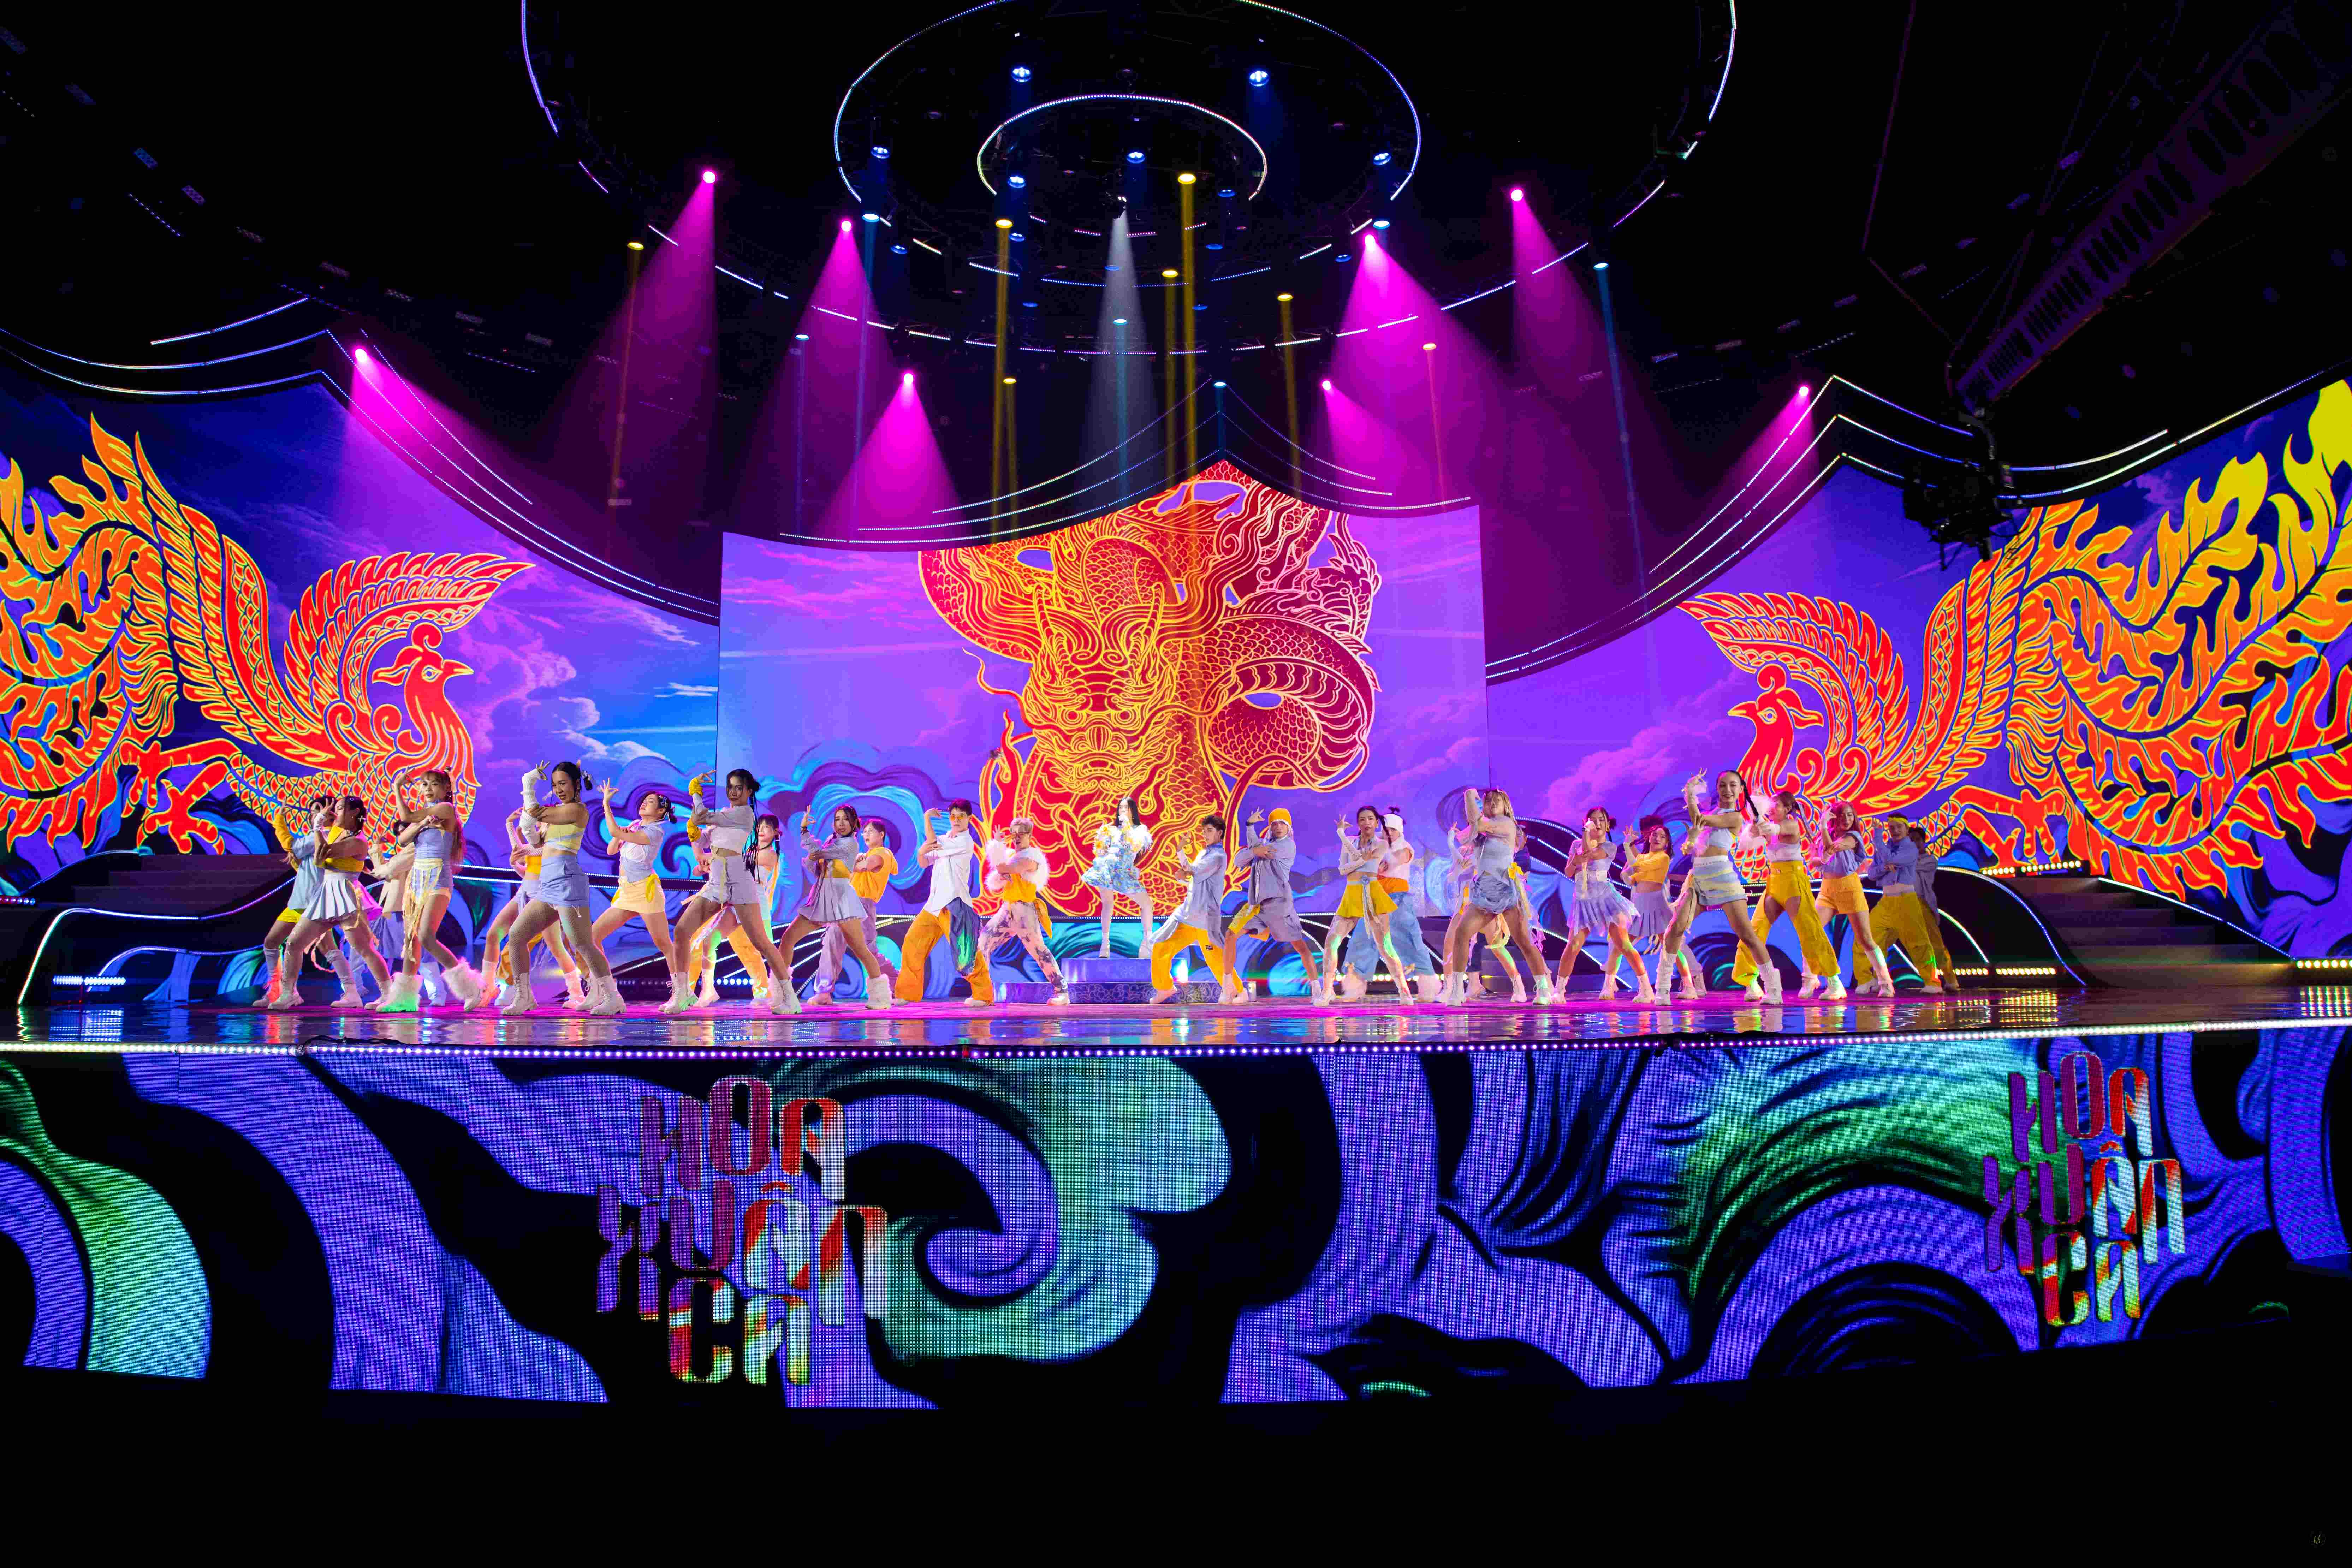 Sân khấu Hoa xuân ca thiết kế đậm chất dân gian đương đại, mang đến đại nhạc hội rực rỡ sắc màu